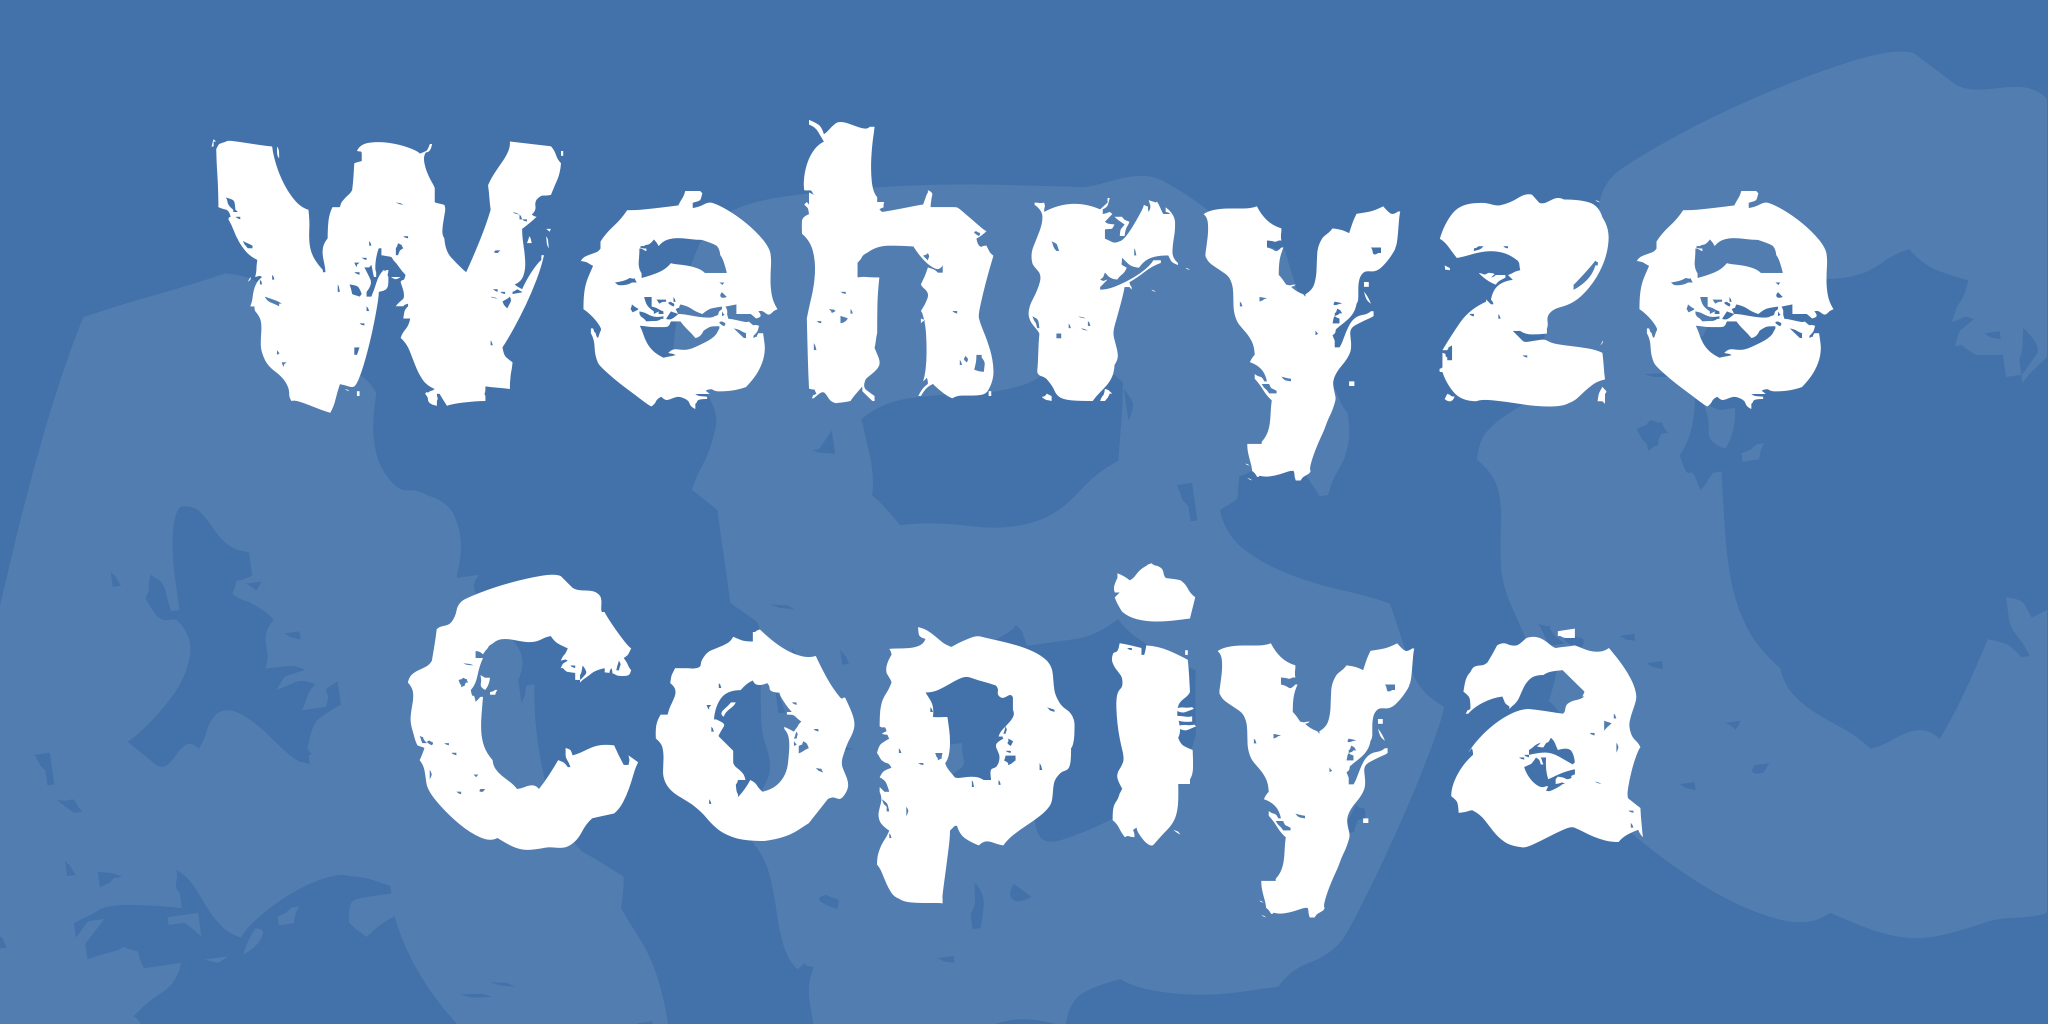 Wehryze Copiya